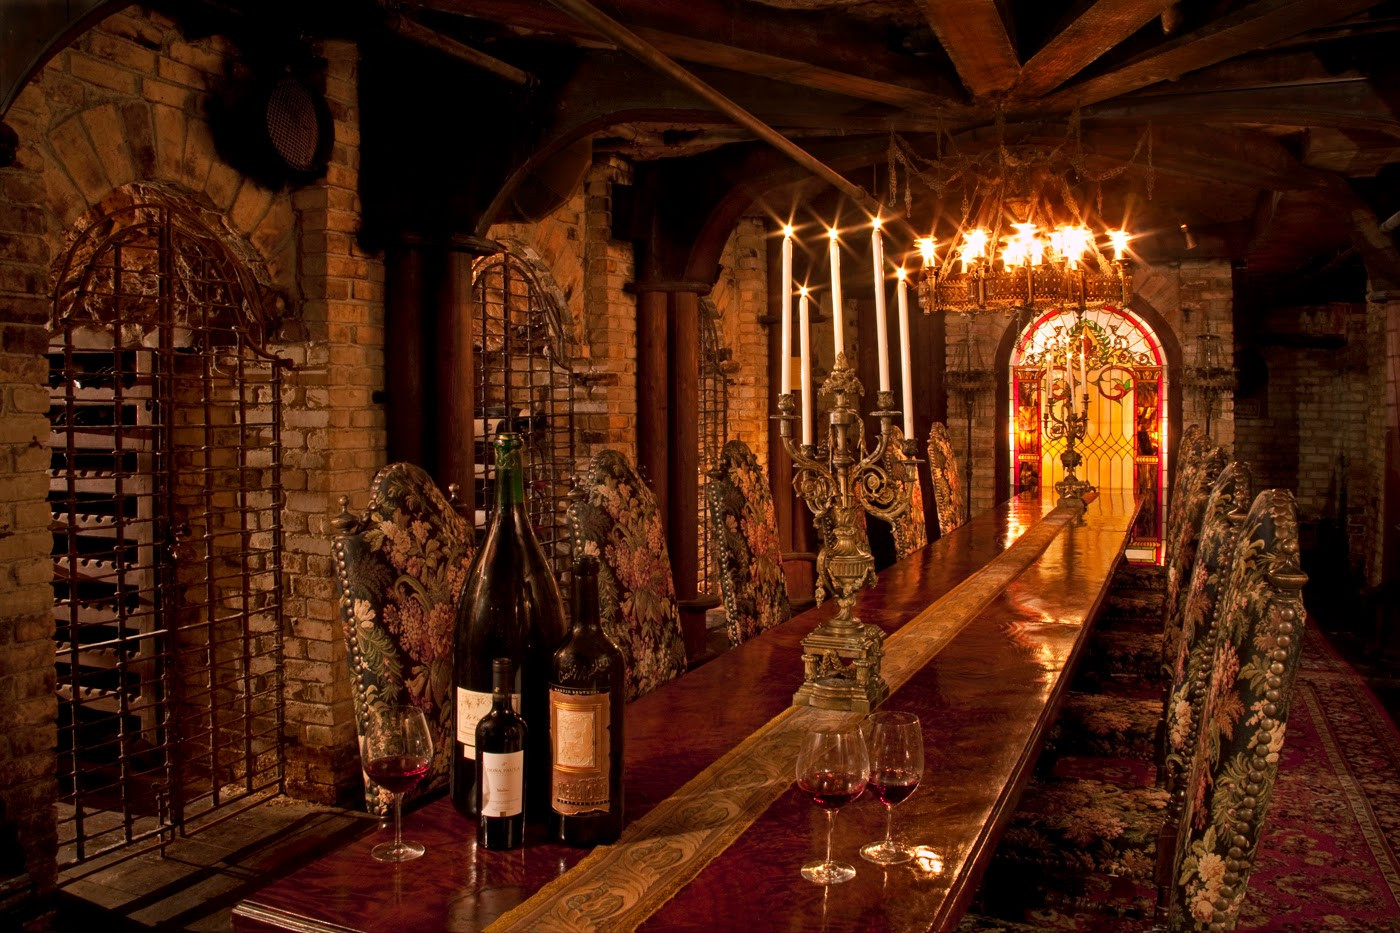 Best ideas about Underground Wine Cellar
. Save or Pin Fine Wine & Art Lovers 5 Wine Cellar Design Now.